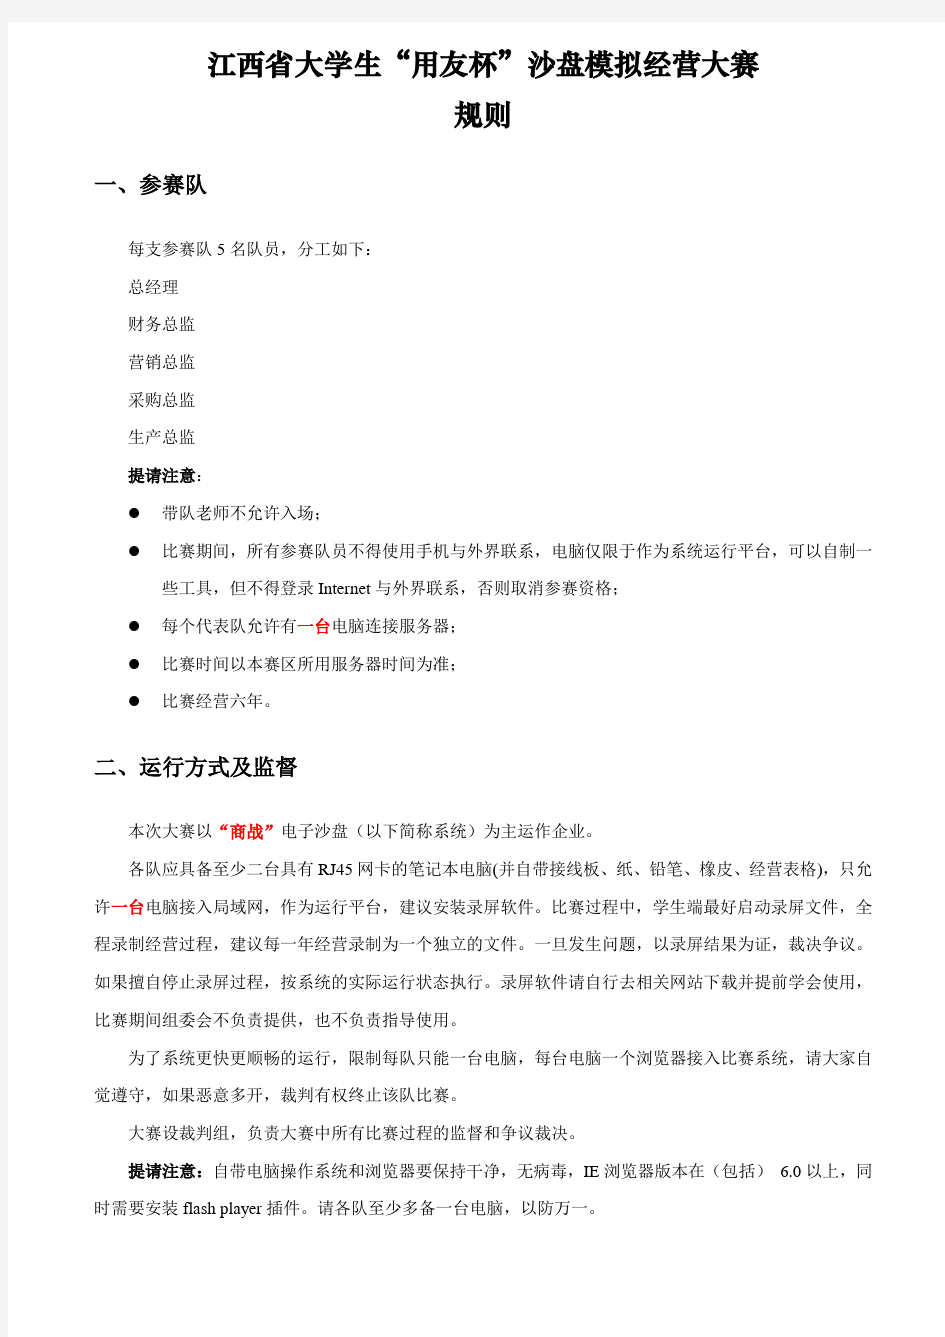 江西省大学生“用友杯”沙盘模拟经营大赛规则